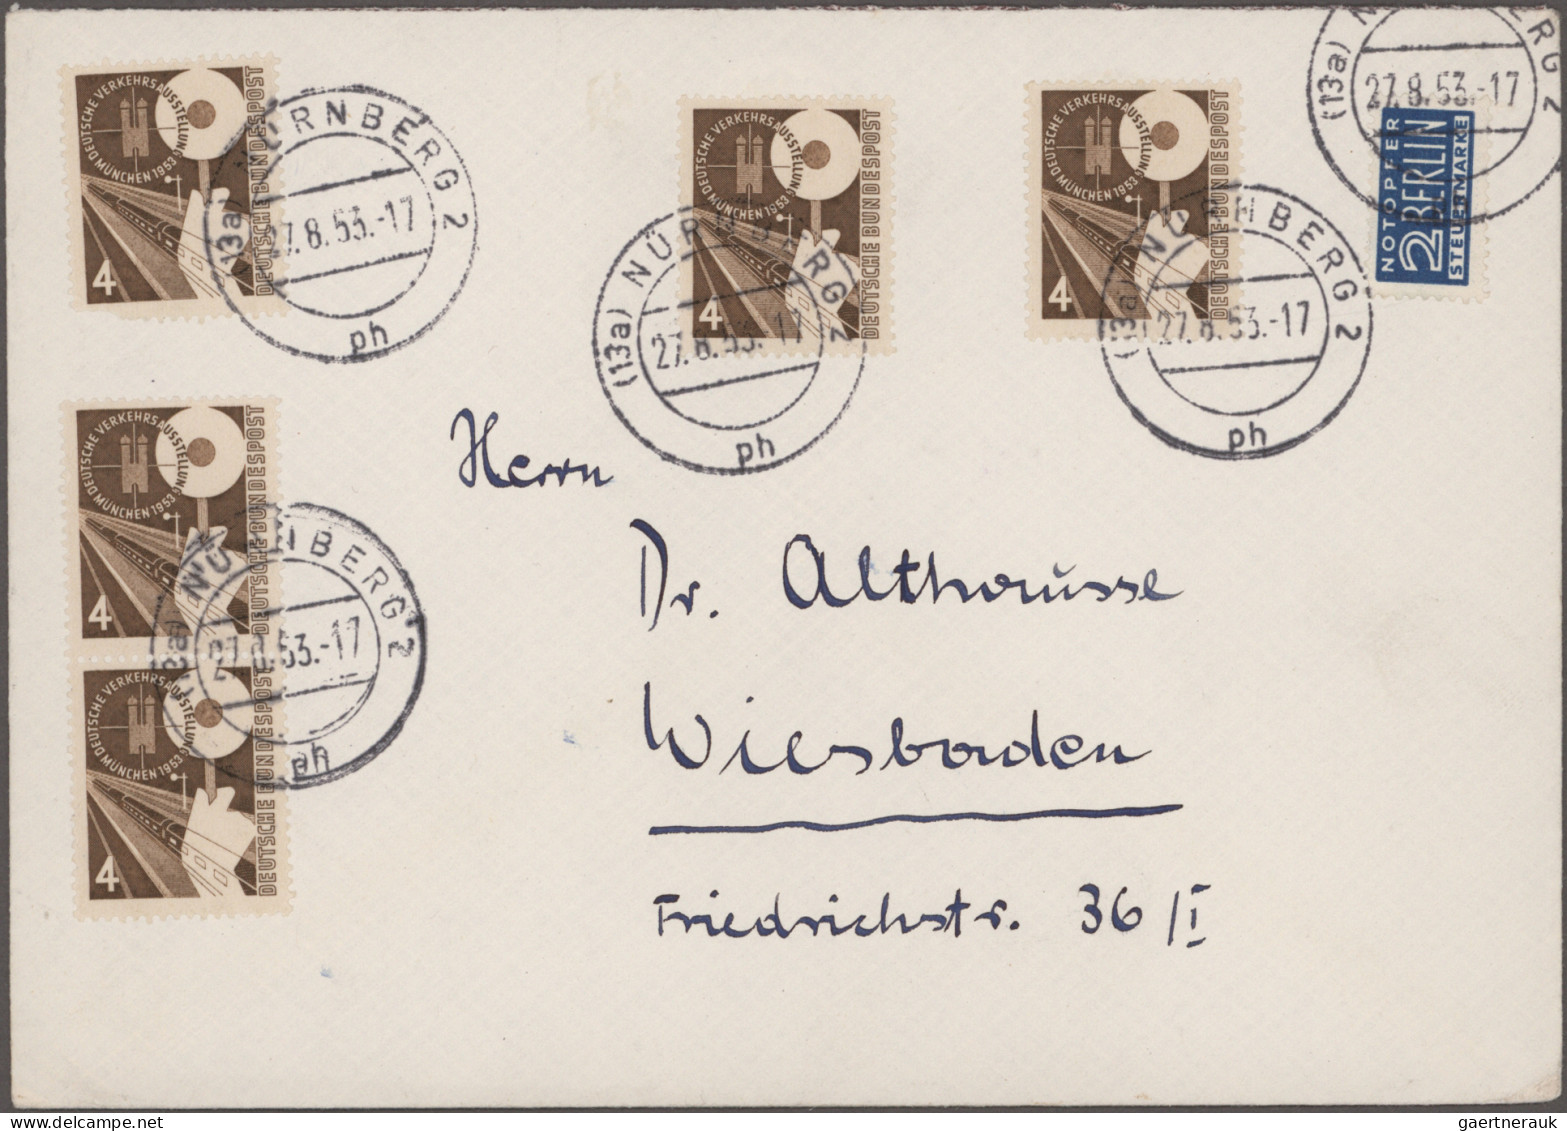 Bundesrepublik Deutschland: 1949/1954, umfangreiche Sammlung der Sondermarkenaus